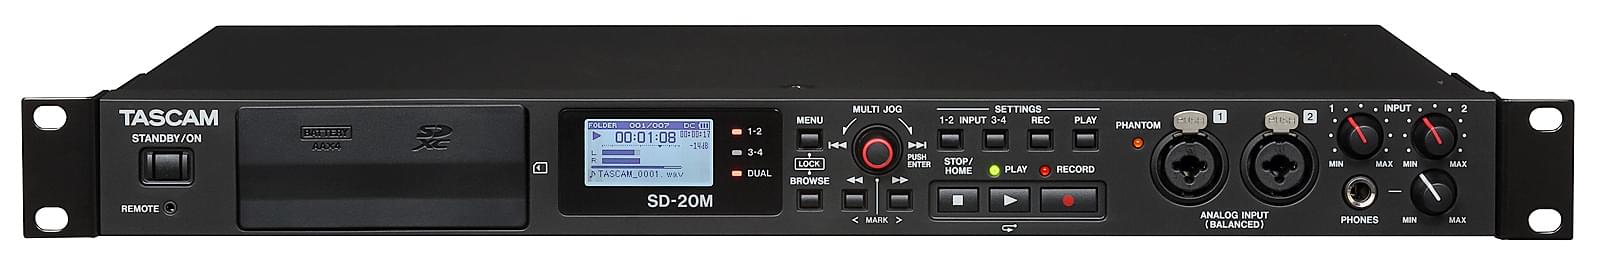 Tascam SD-20M 4-ścieżkowy rejestrator do instalacji na kartach SD,  rozwiązanie do długiego nagrywania, WAV , MP3, kopia bezpieczeństwa , własne zasilanie AA